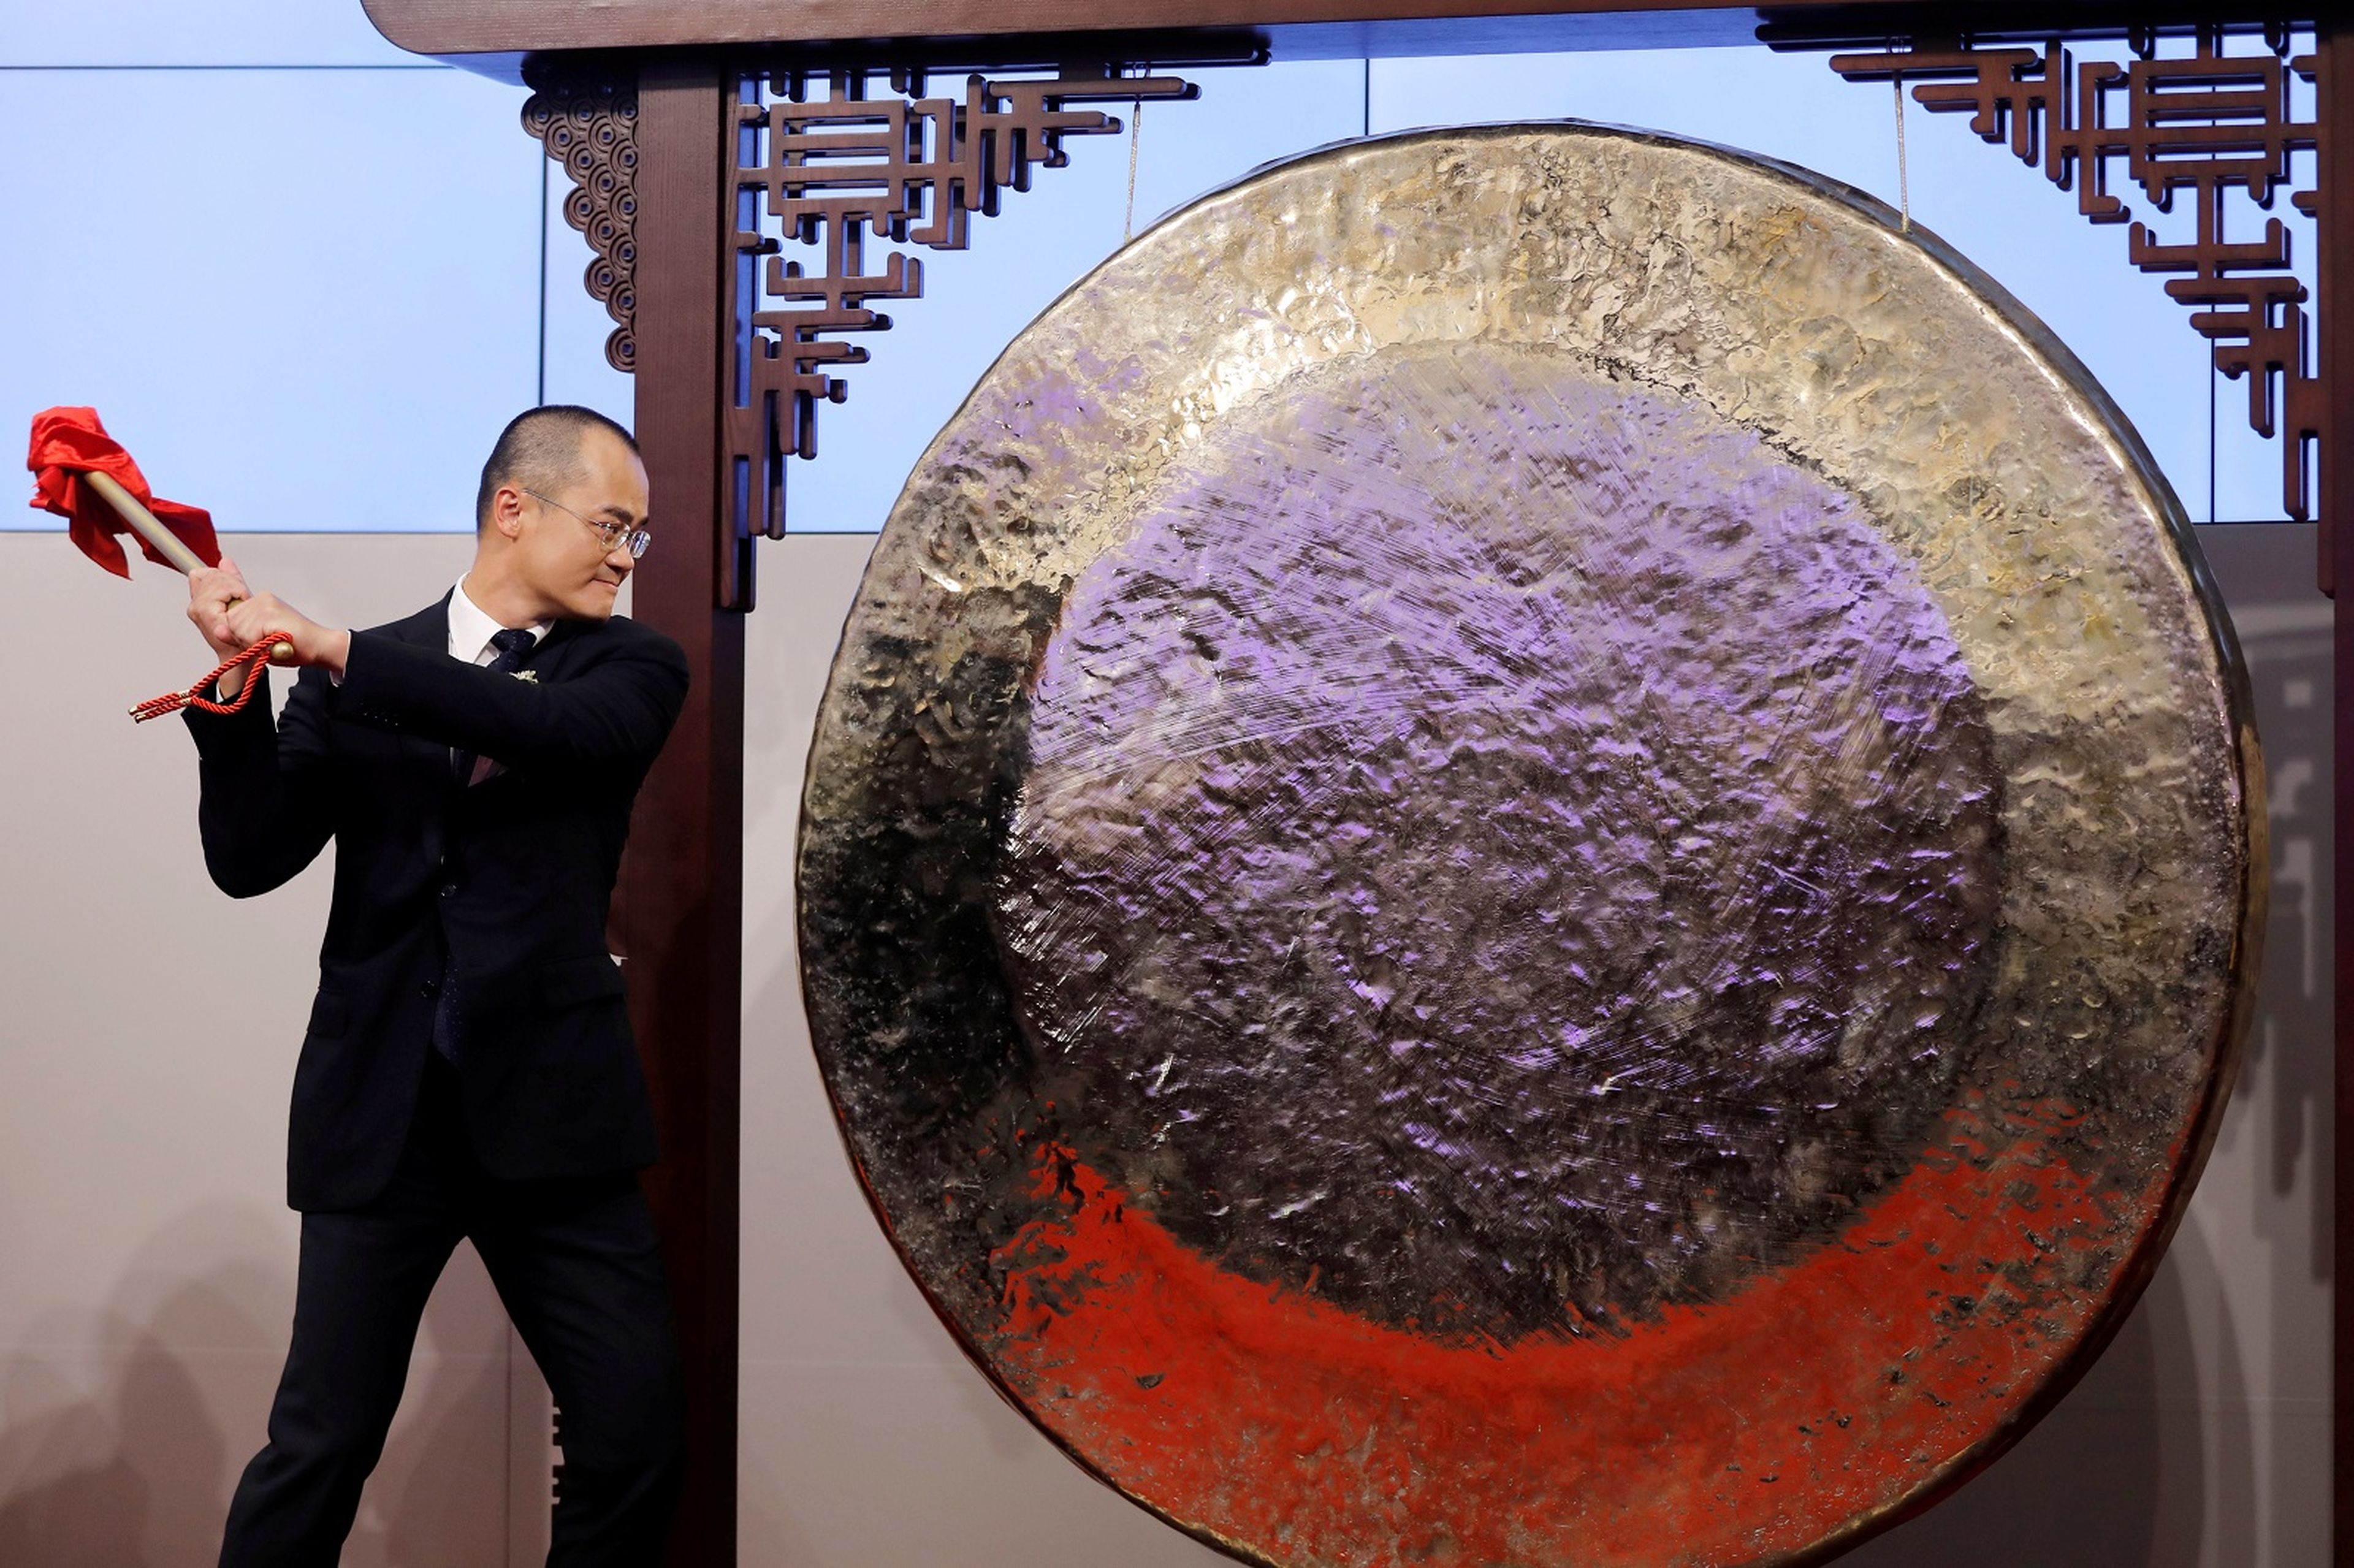 El CEO de Meituan Dianping, Xing Wang, golpea un gong en el debut de su empresa en el índice hongkonés.